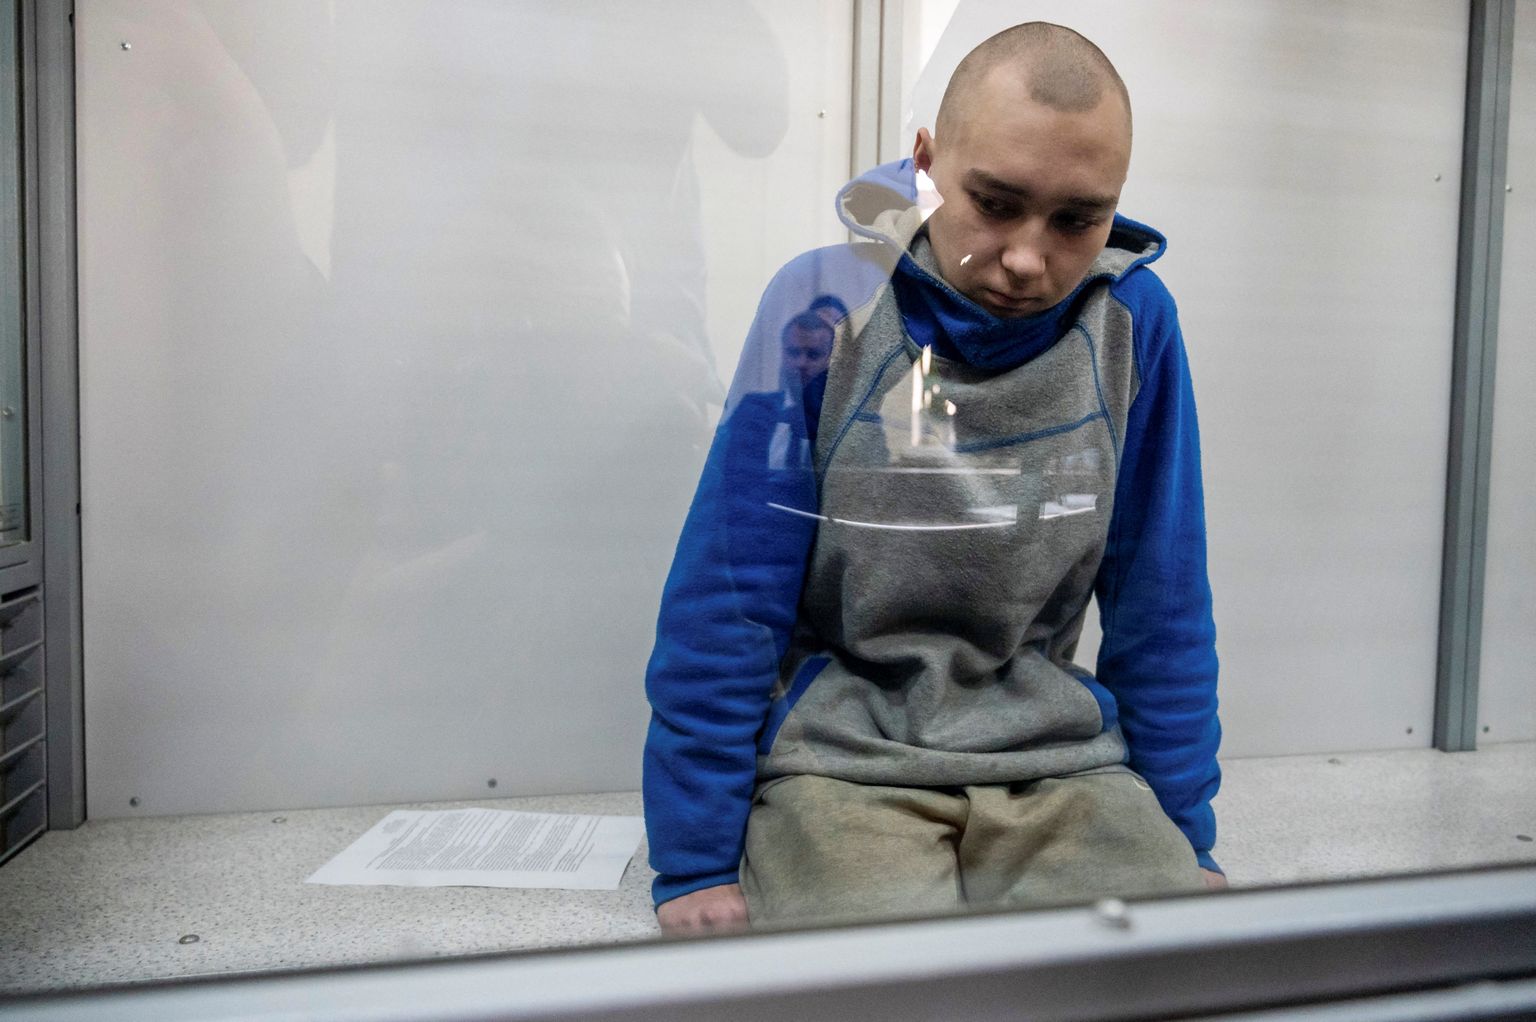 Vene sõdur, 21-aastane Vadim Šišimarin Ukraina Kiievi kohtus. Teda süüdistati sõjakuriteos ja talle määrati eluaegne vangistus